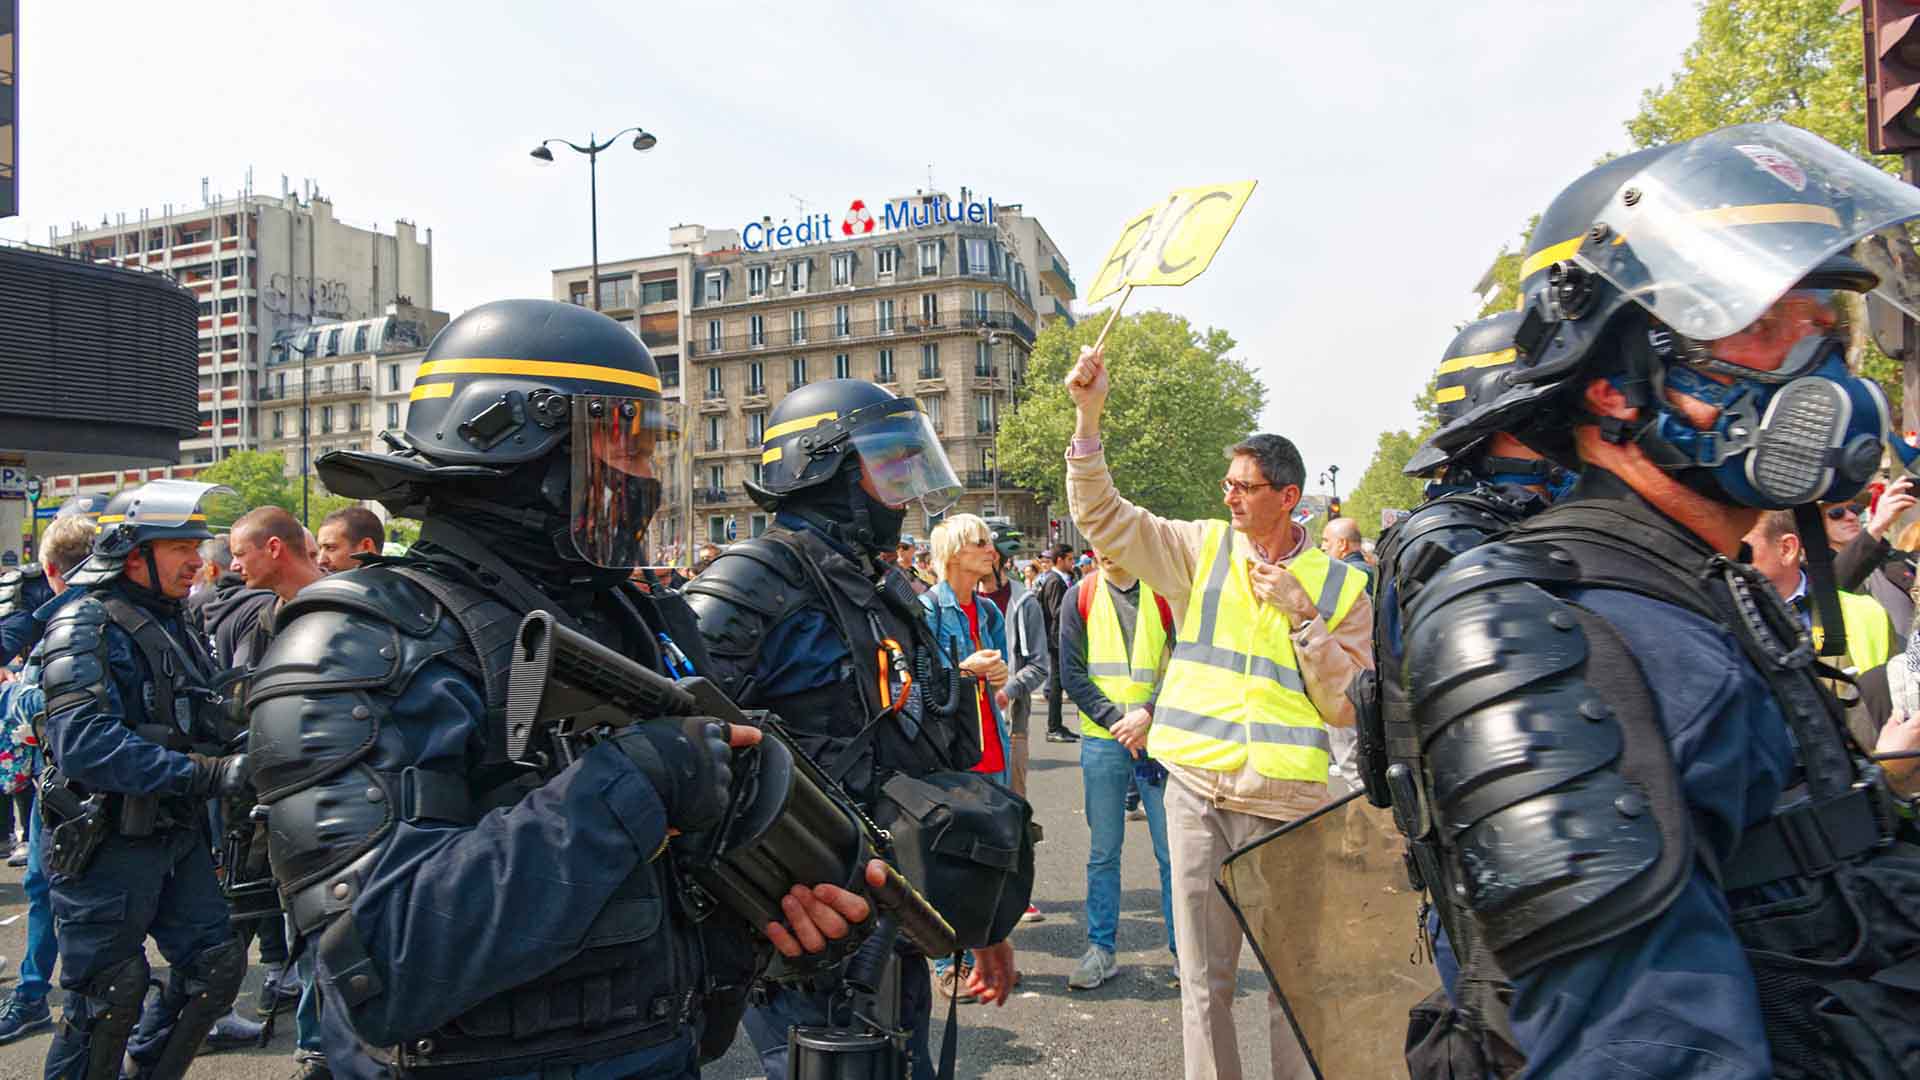 Manifestation des gilets jaunes le 1er Mai  2019, présence des forces de l'ordre